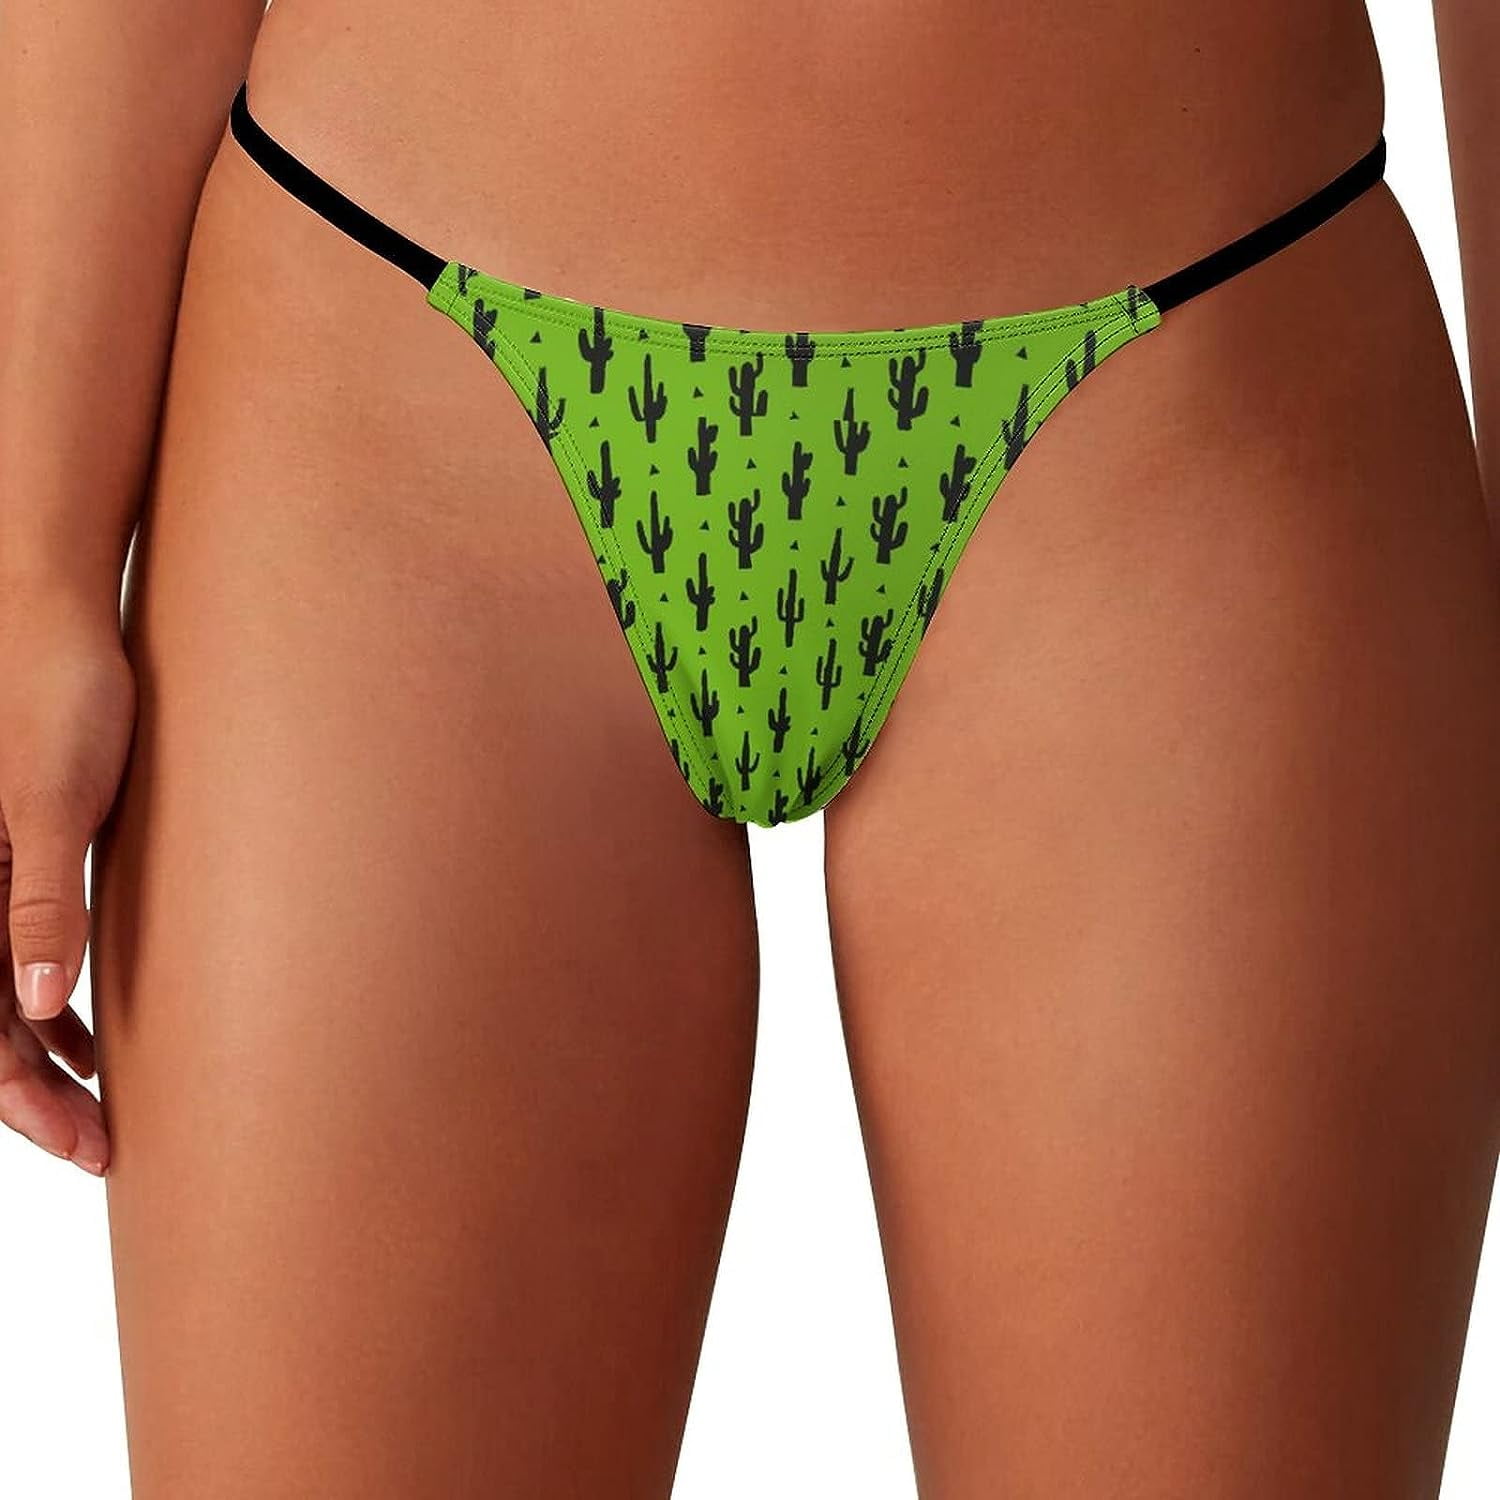 Cactus Pattern Women S Panties G Strings Thong Sexy T Back Panty